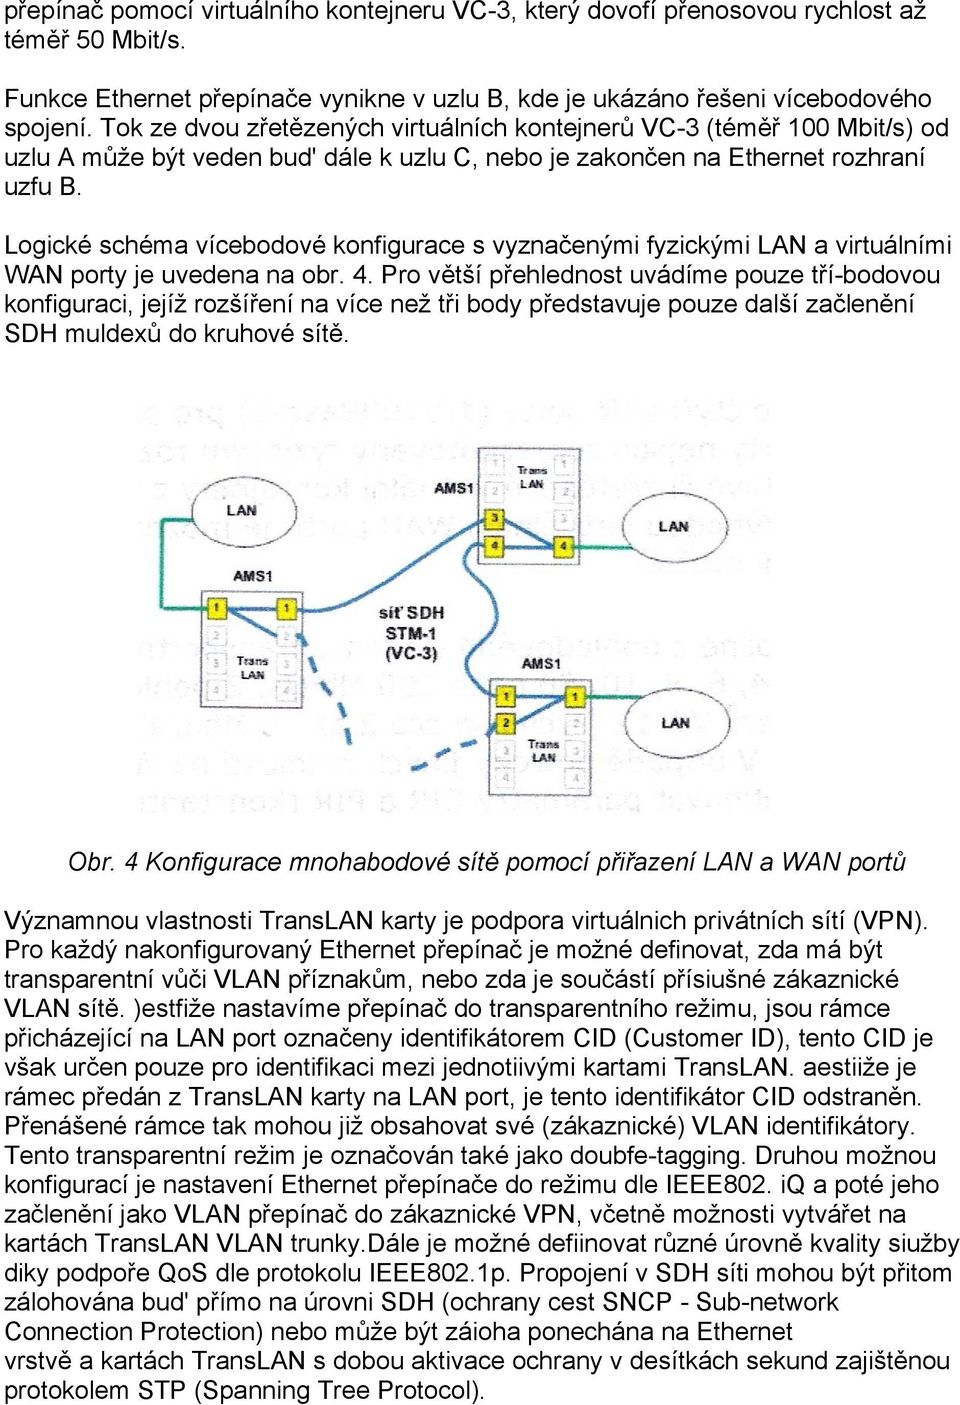 Logické schéma vícebodové konfigurace s vyznačenými fyzickými LAN a virtuálními WAN porty je uvedena na obr. 4.